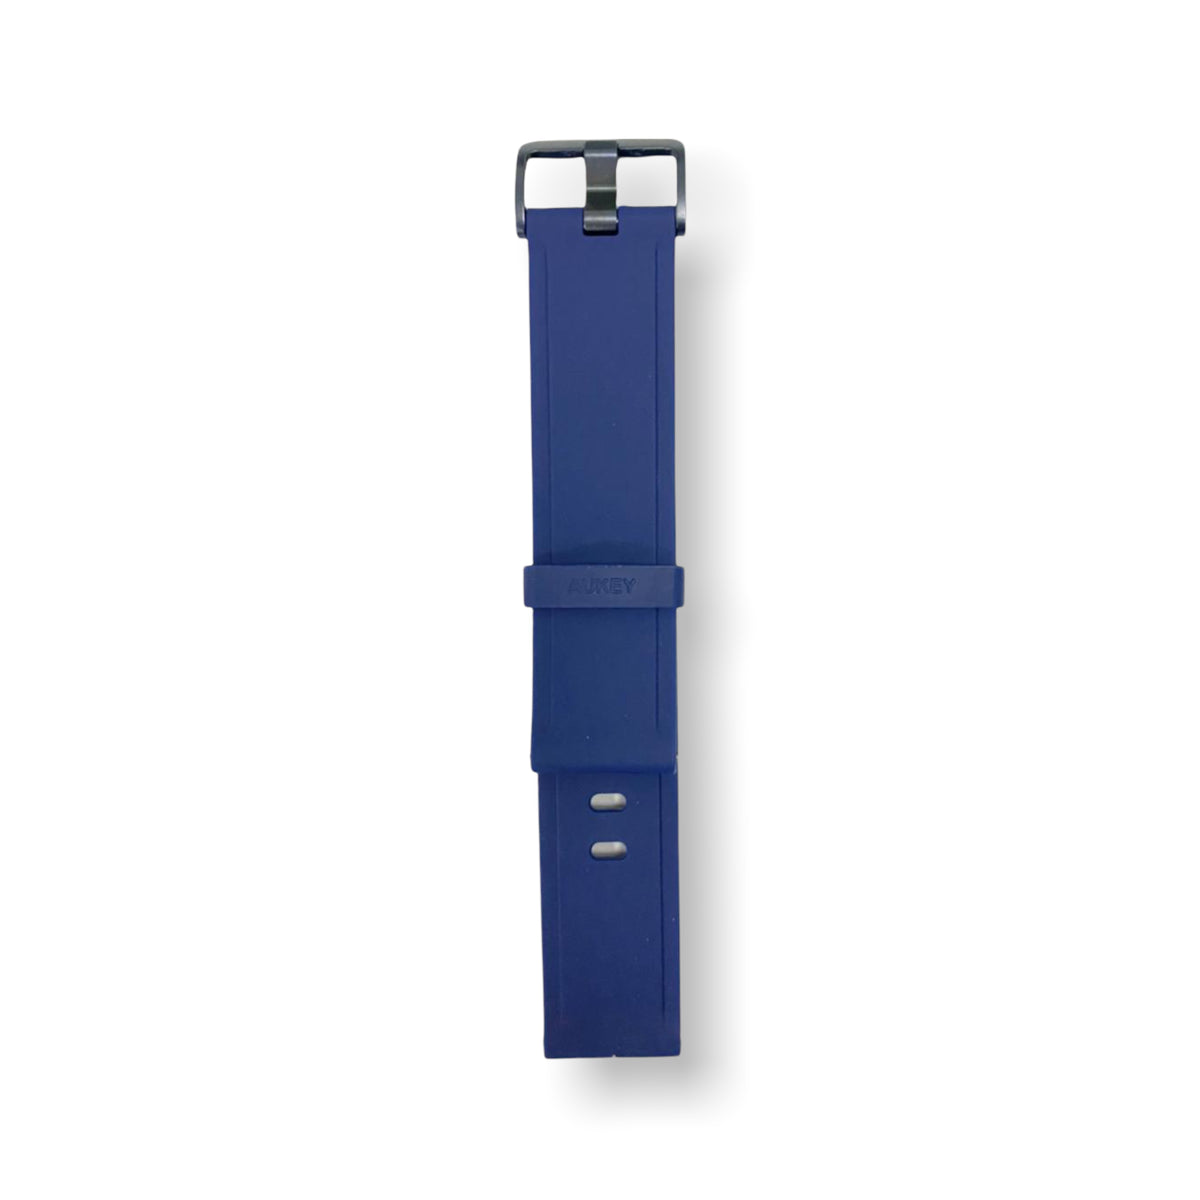 Accesorio aukey pulsera para ls02 color azul